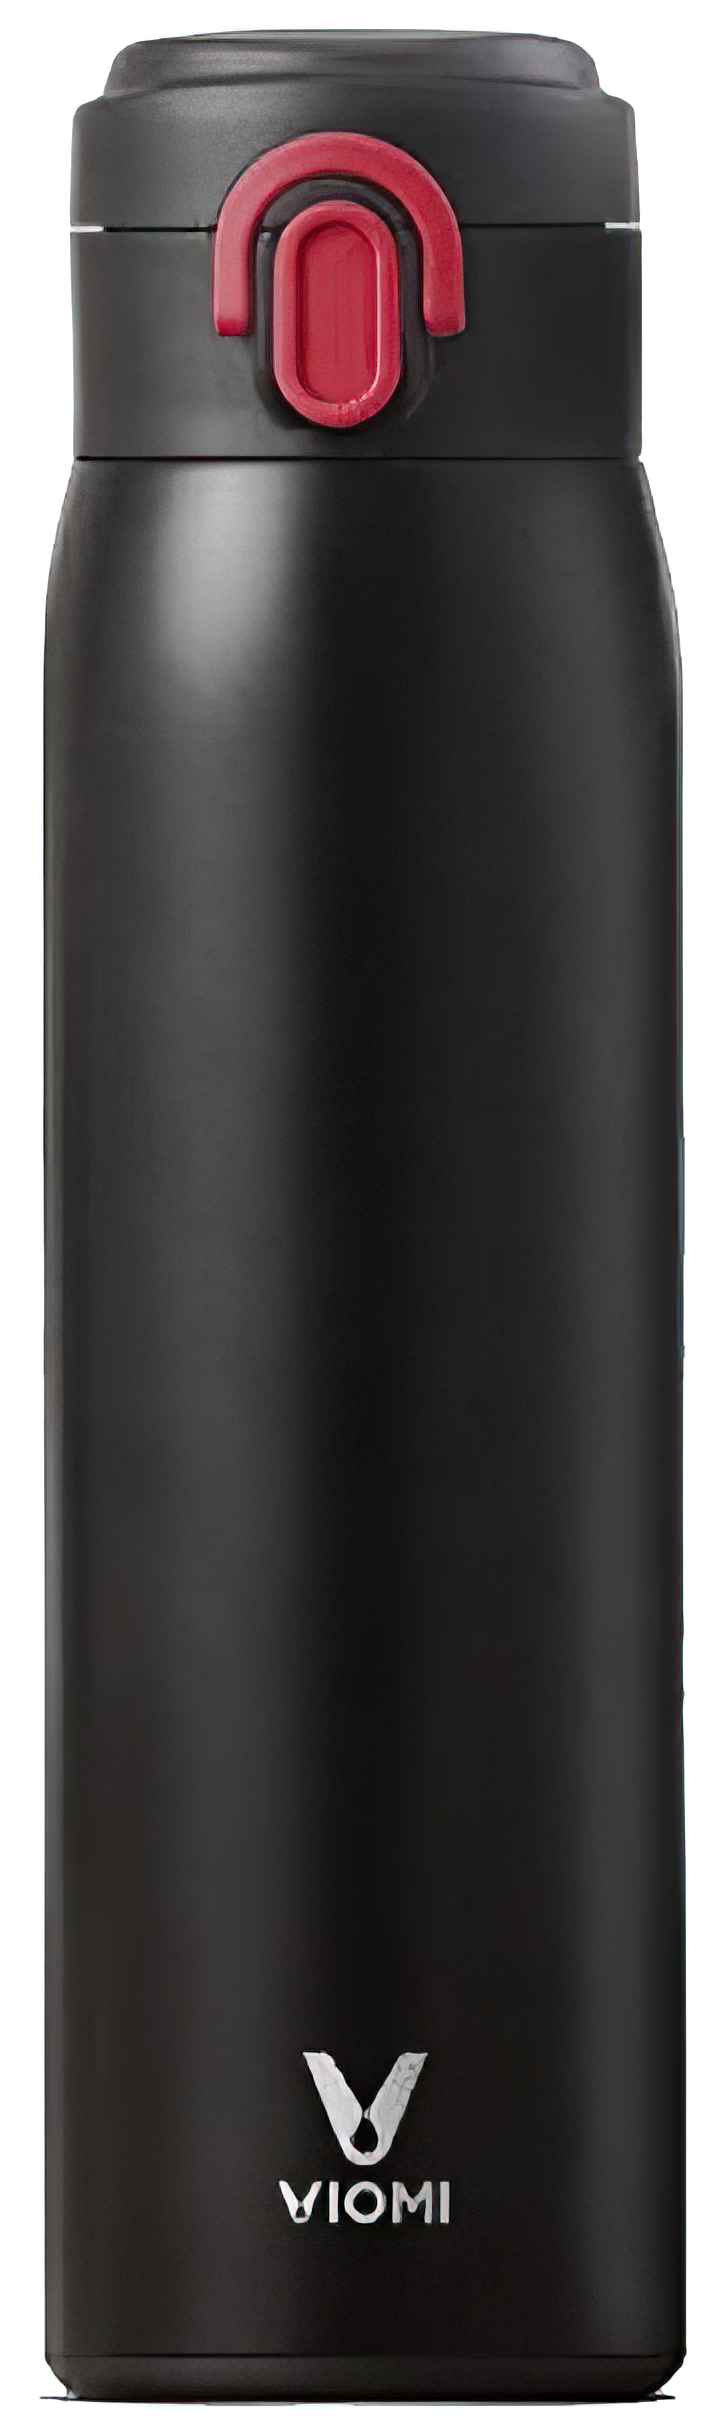 Xiaomi VIOMI Stainless Steel Vacuum 300 ml - Black КАРКАМ